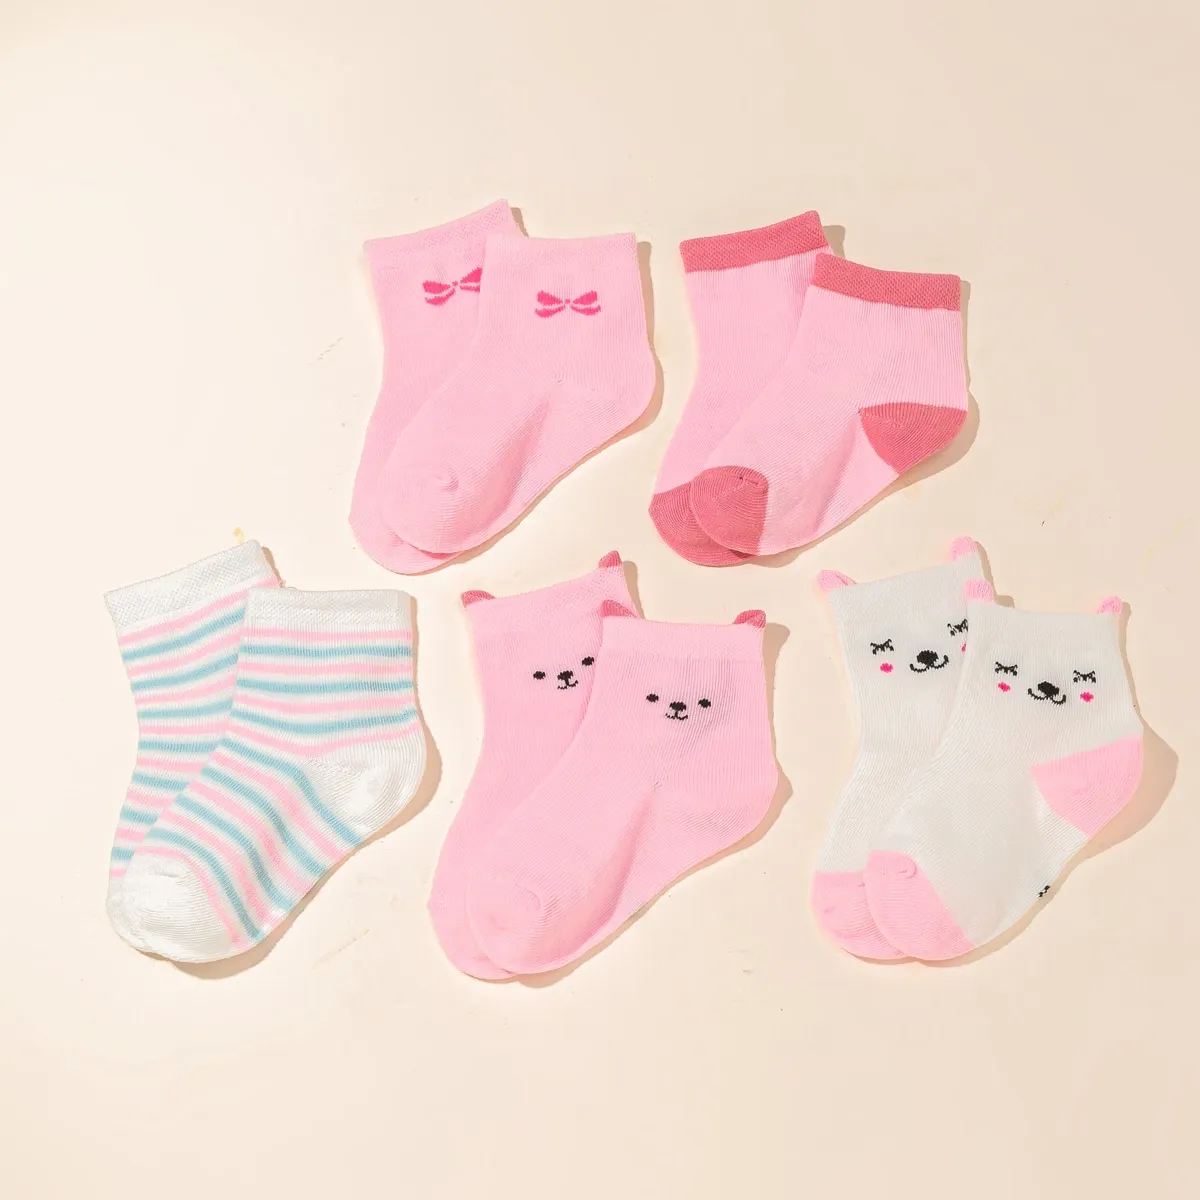 Pacote com 5 meias coloridas de desenho animado para bebês/crianças Rosa big image 1